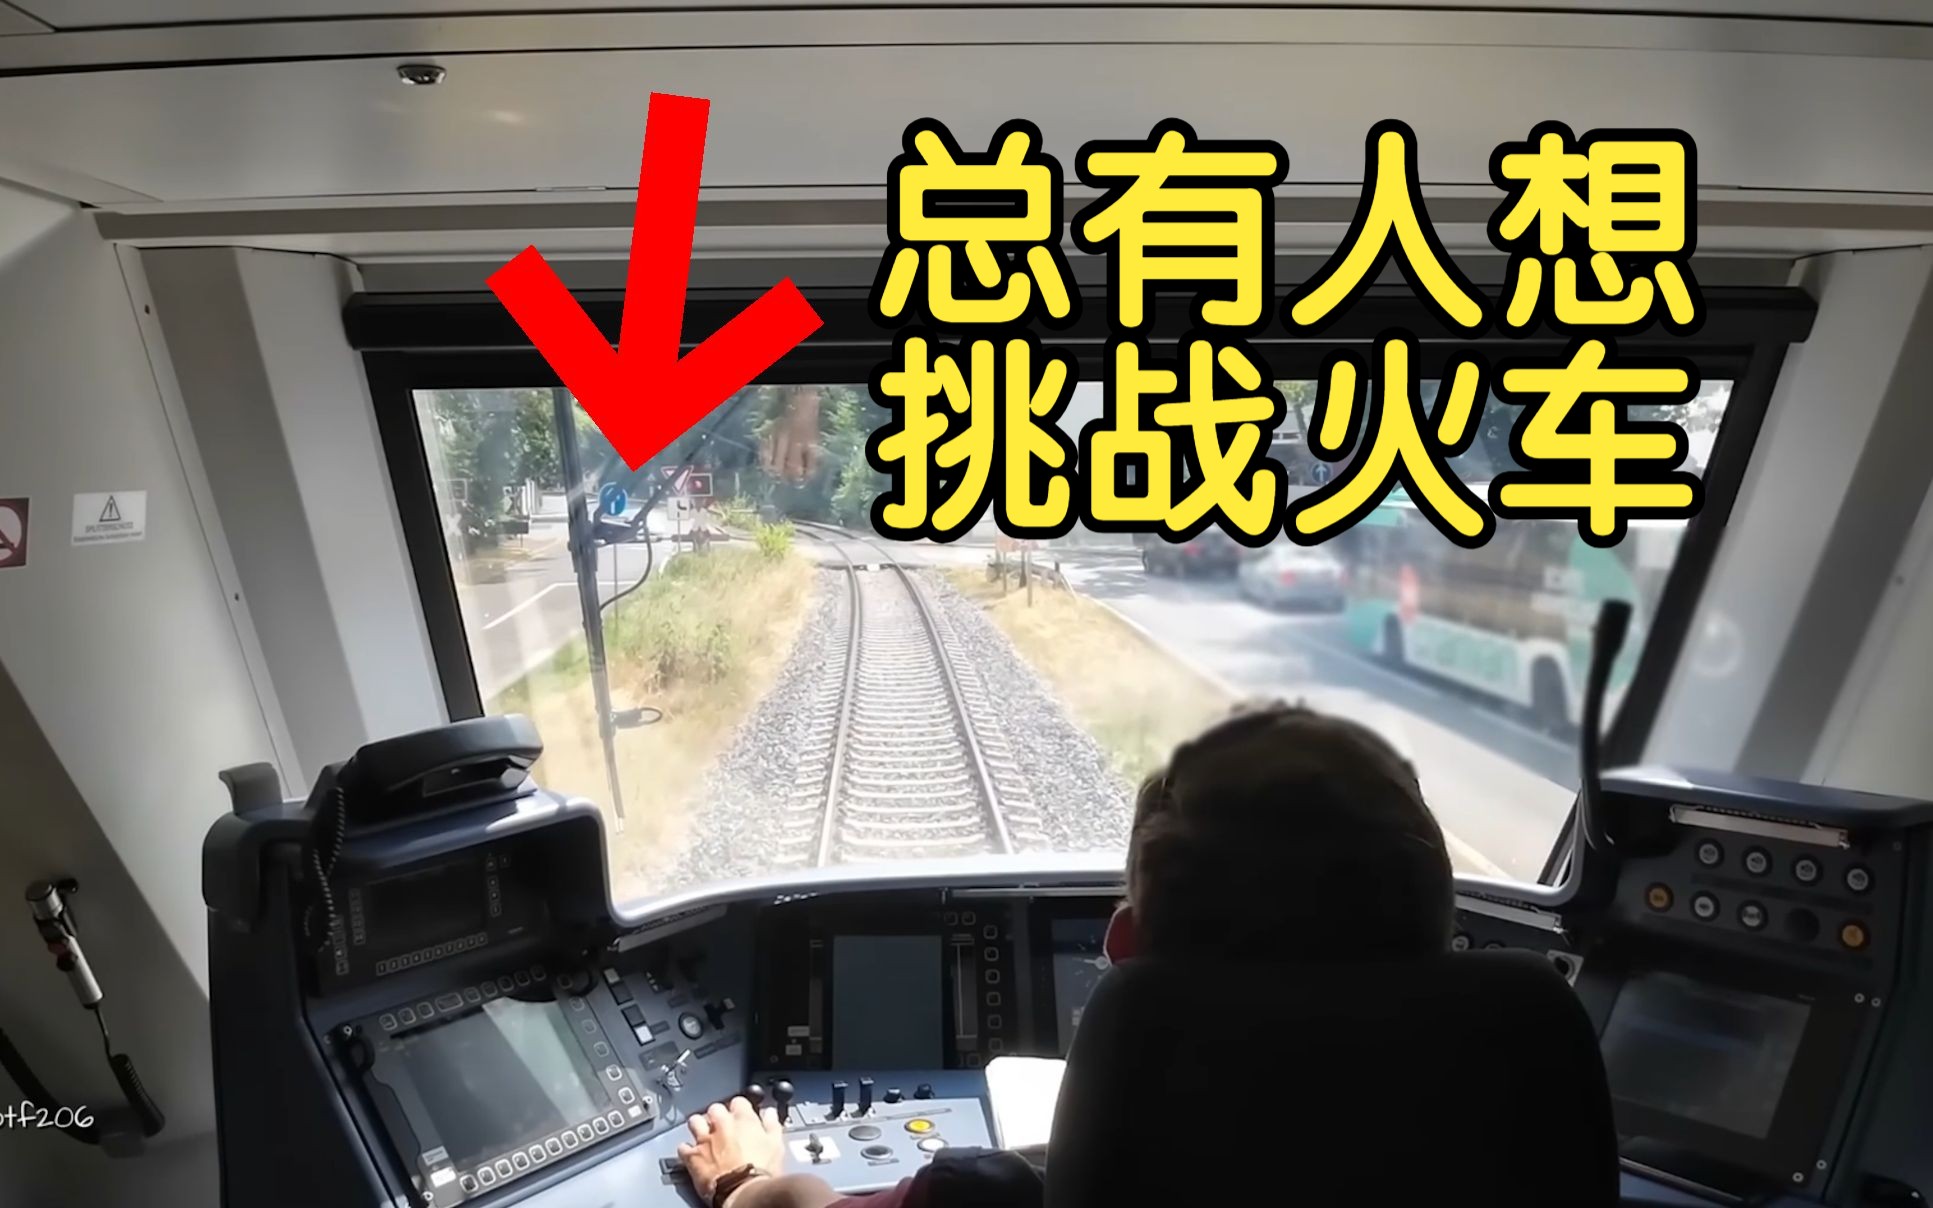 【中字】德国火车司机 在线吐槽驾驶中遇到的危险行为